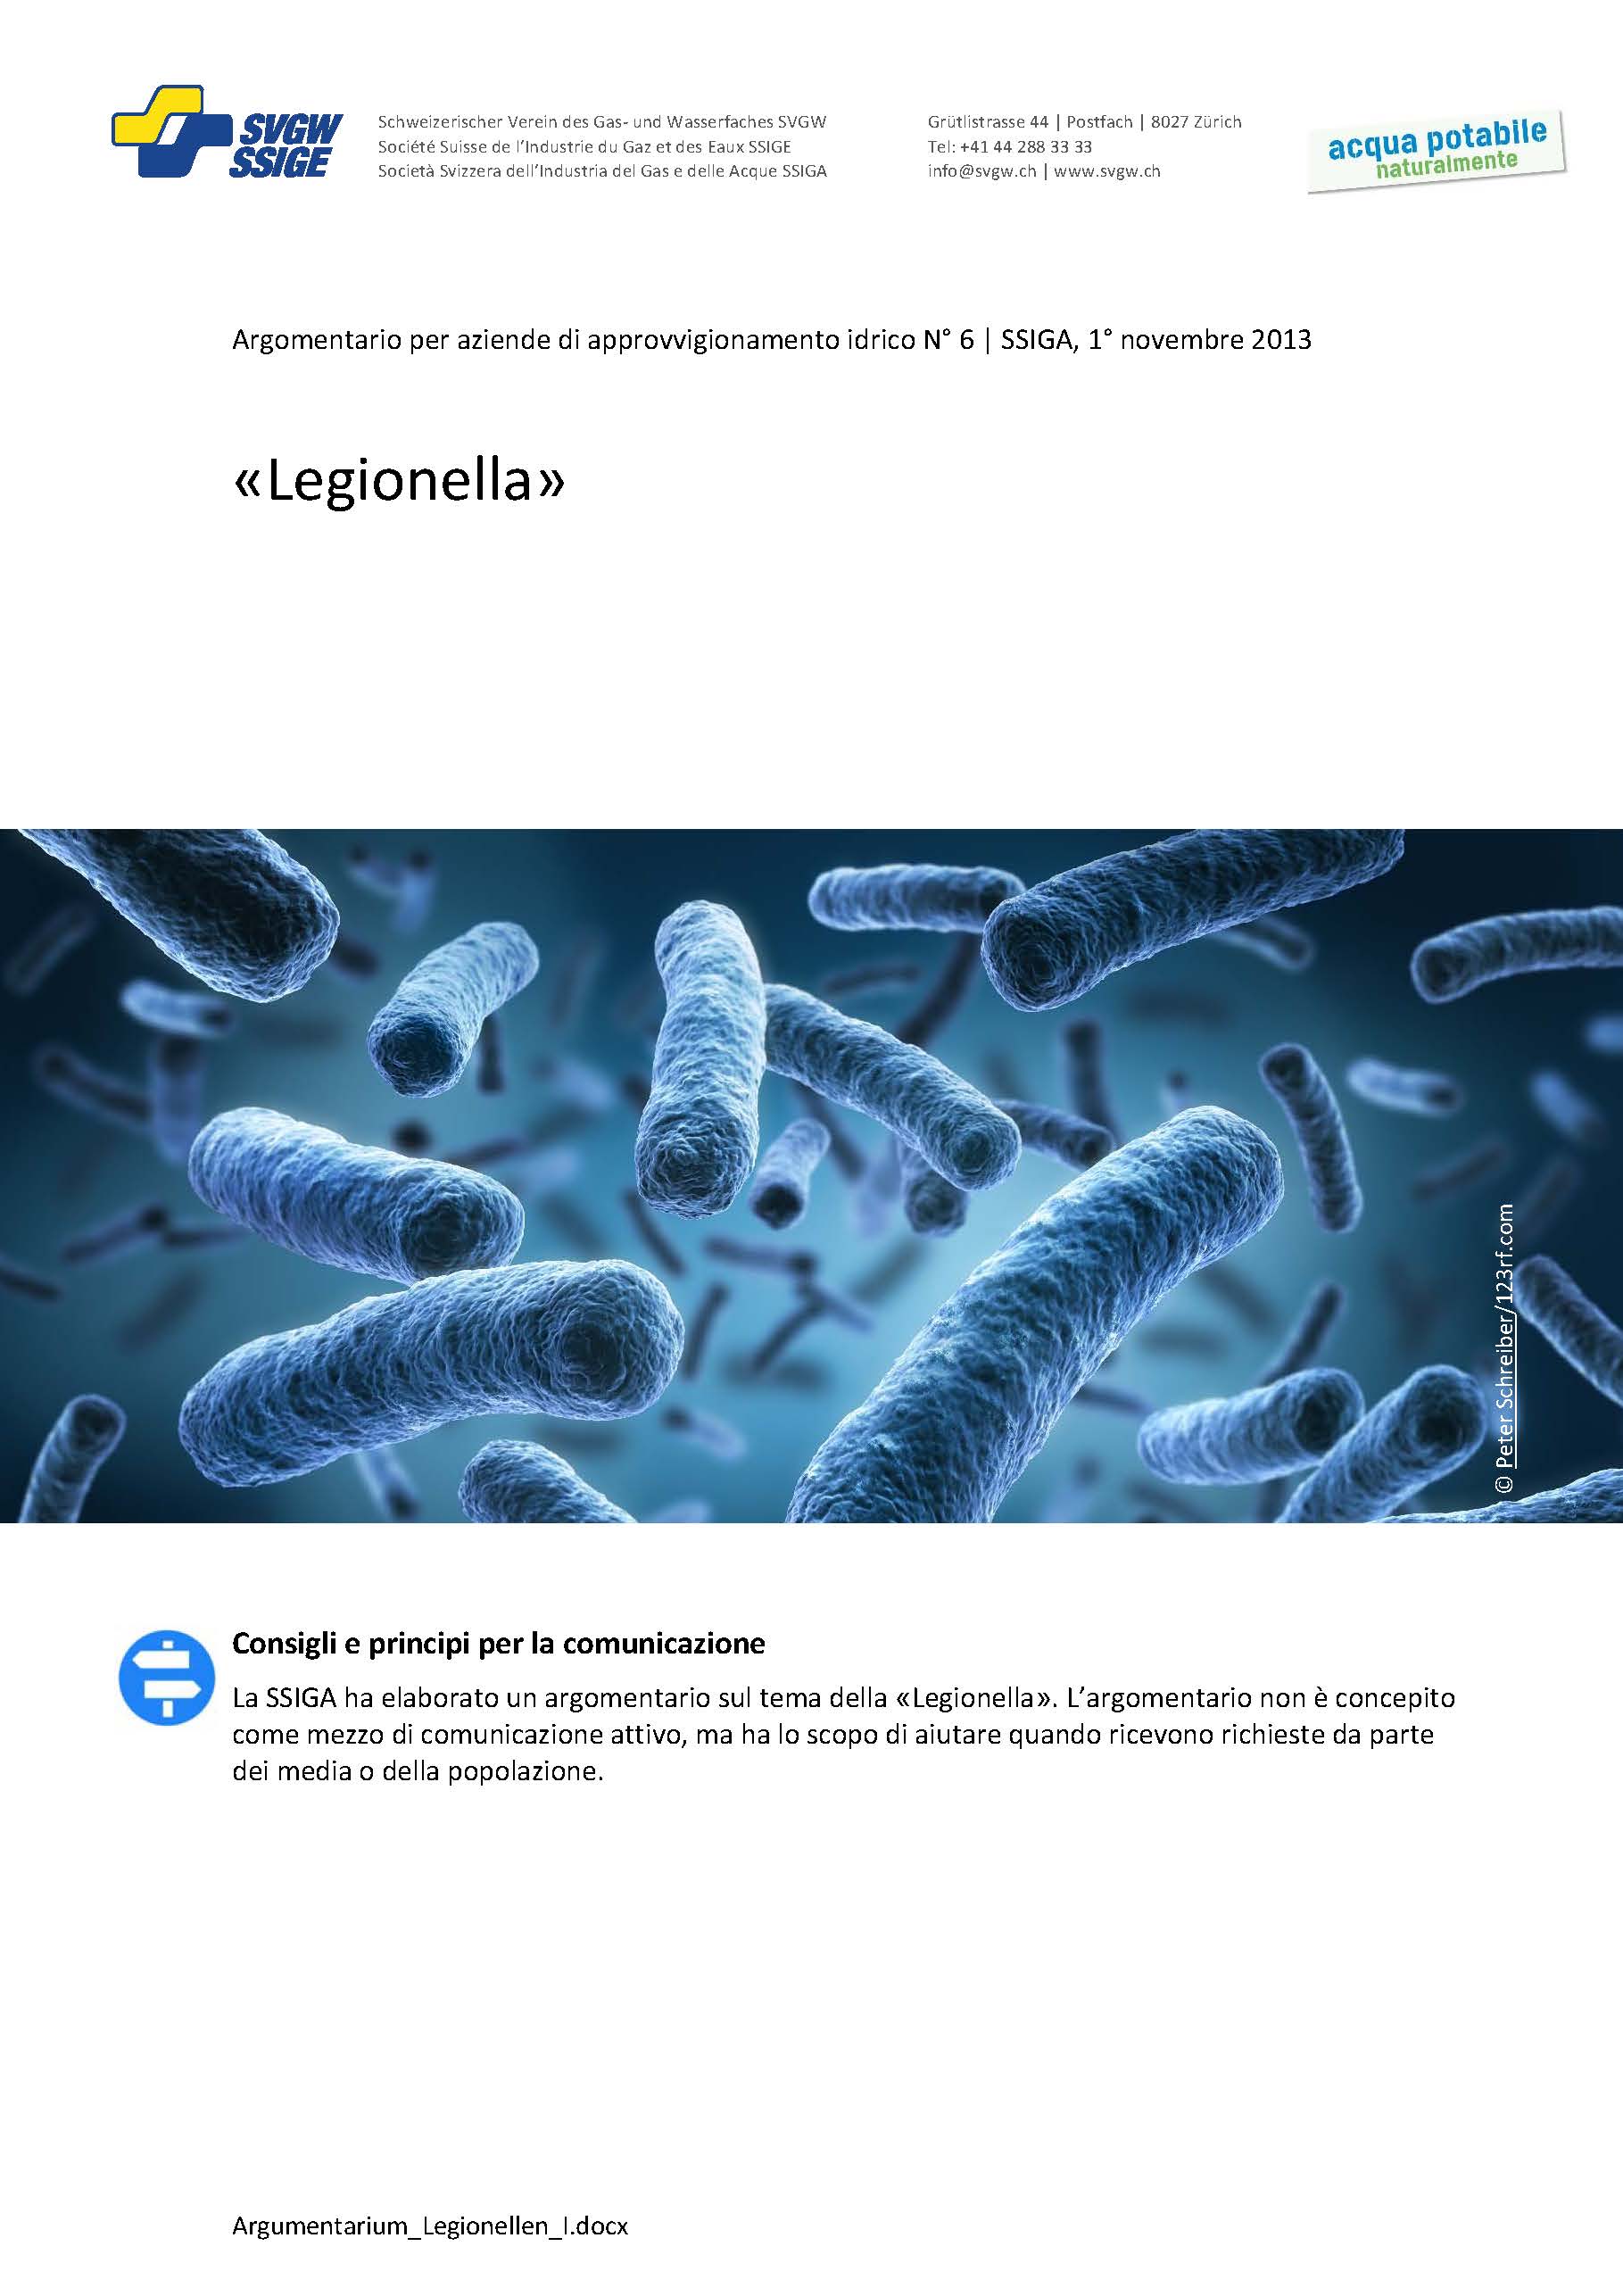 Argomentazione: «Legionella»